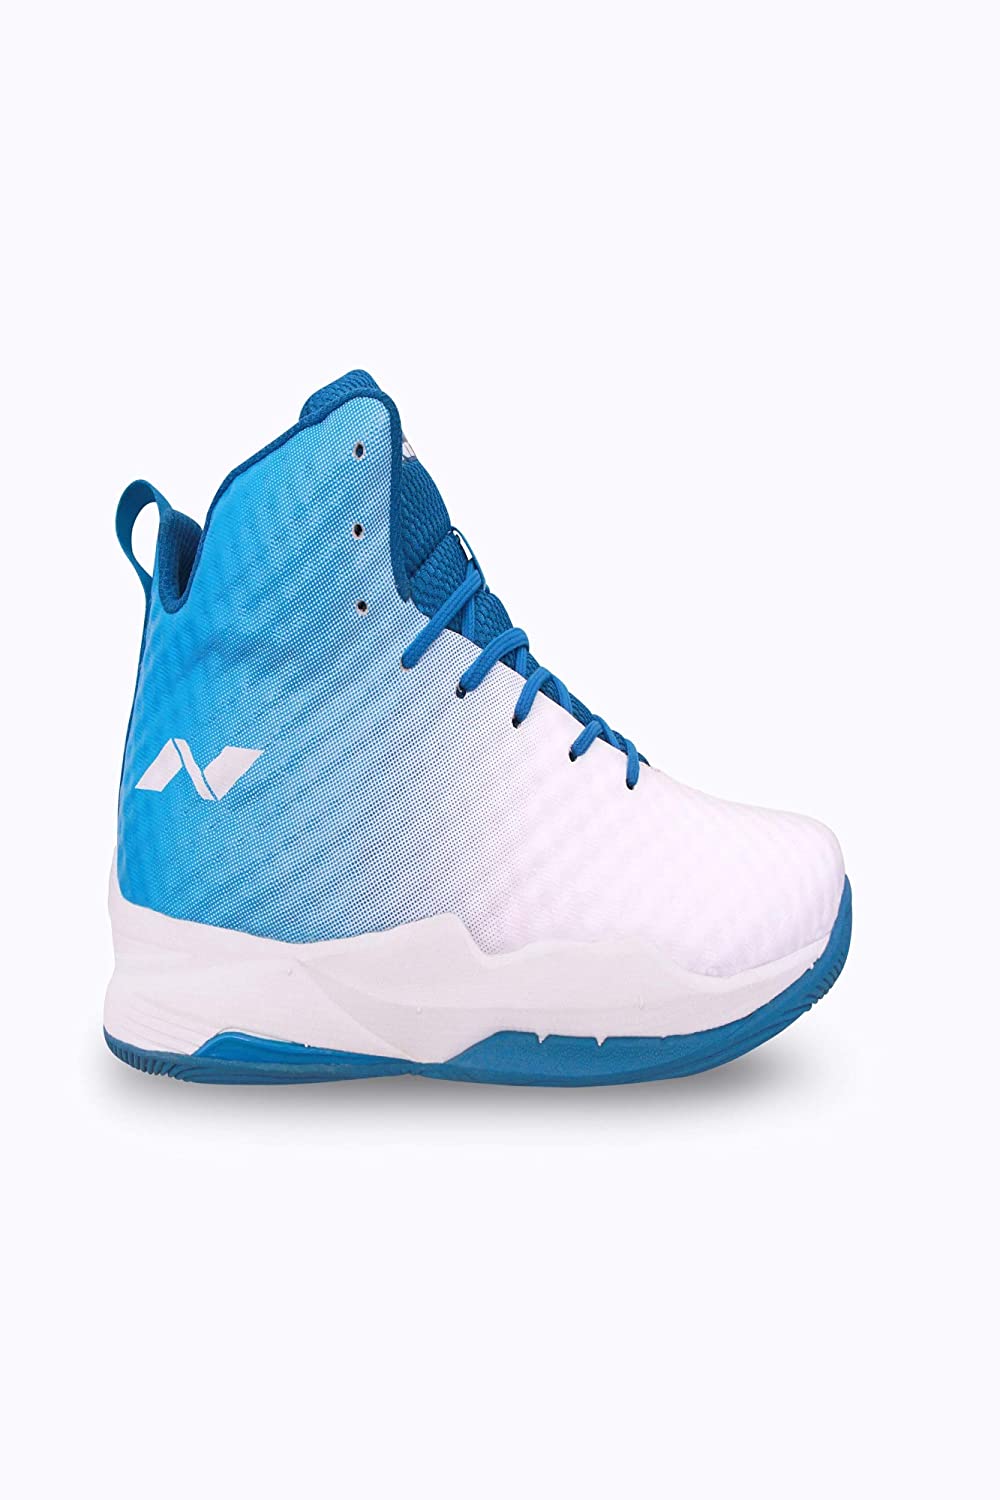 Nivia 1173WS Engraver Basketball Shoe for Mens - Best Price online Prokicksports.com